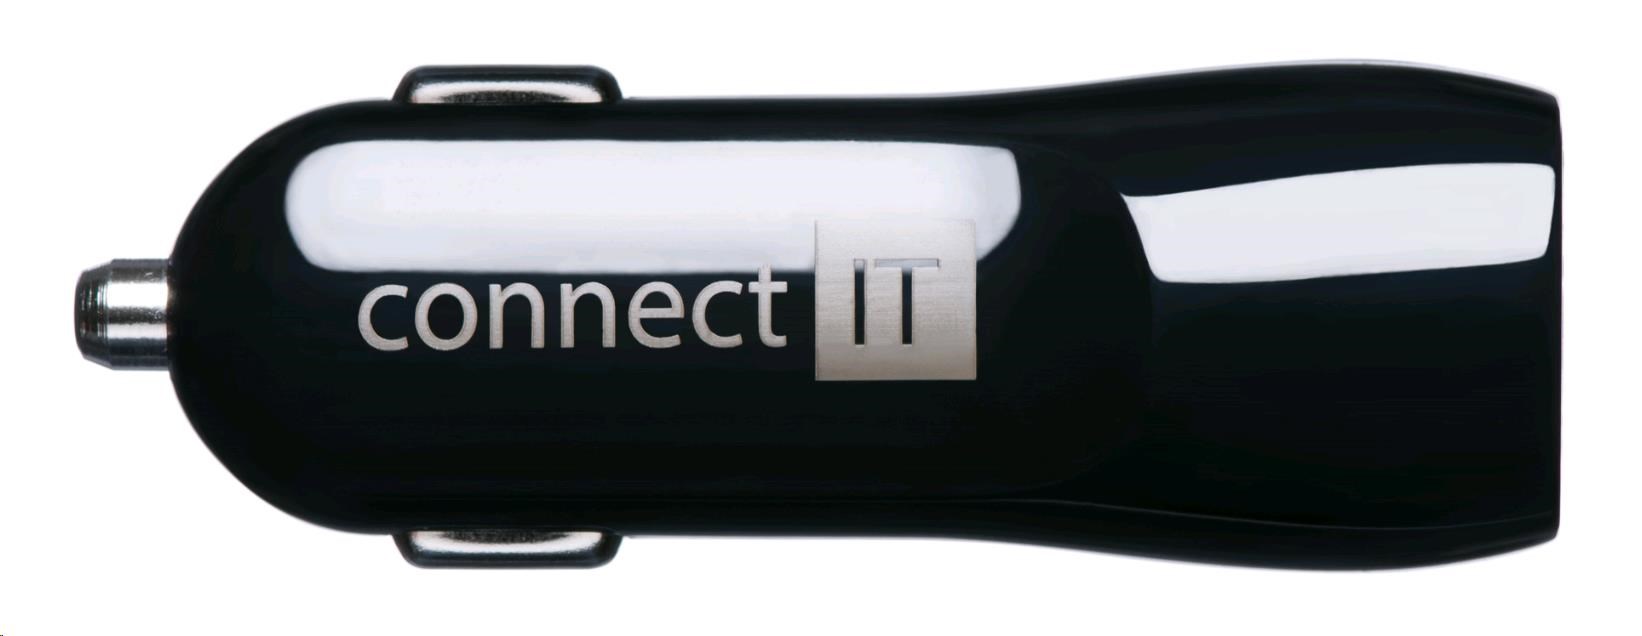 Univerzálna nabíjačka do auta CONNECT IT USB PREMIUM (2x USB 3,1A a 1A., adaptér do auta CL)2 